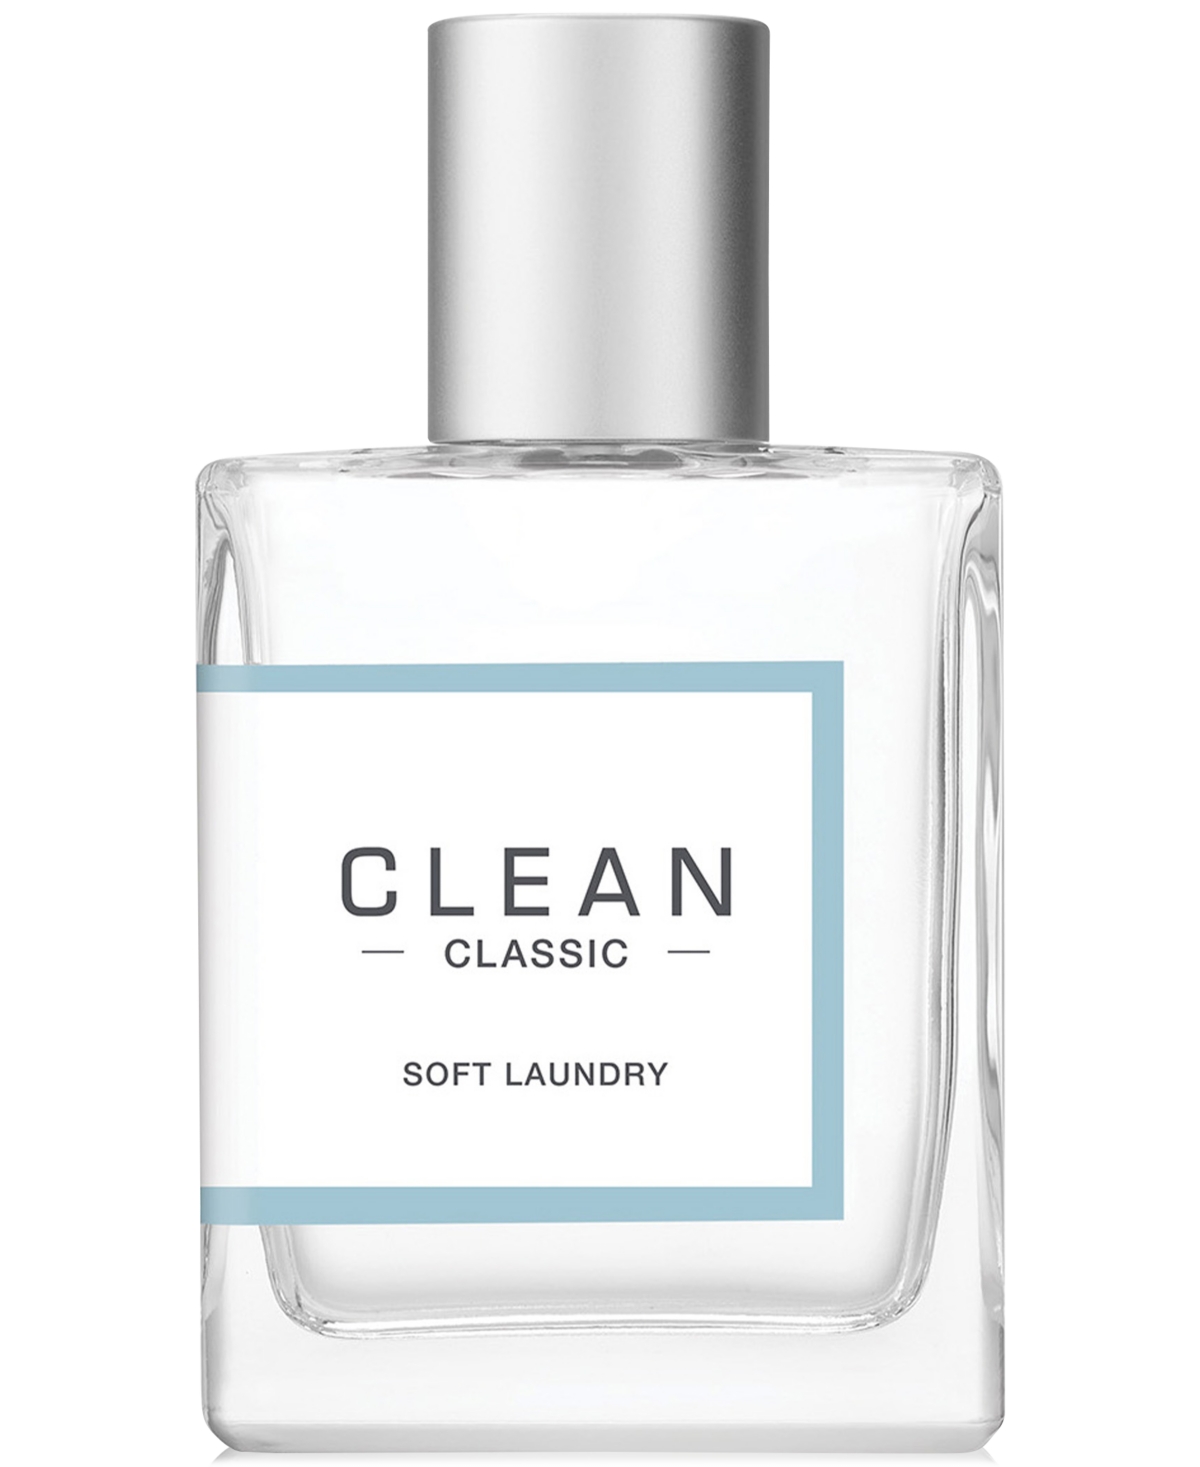 Classic Soft Laundry Eau De Parfum Spray, 2 fl oz